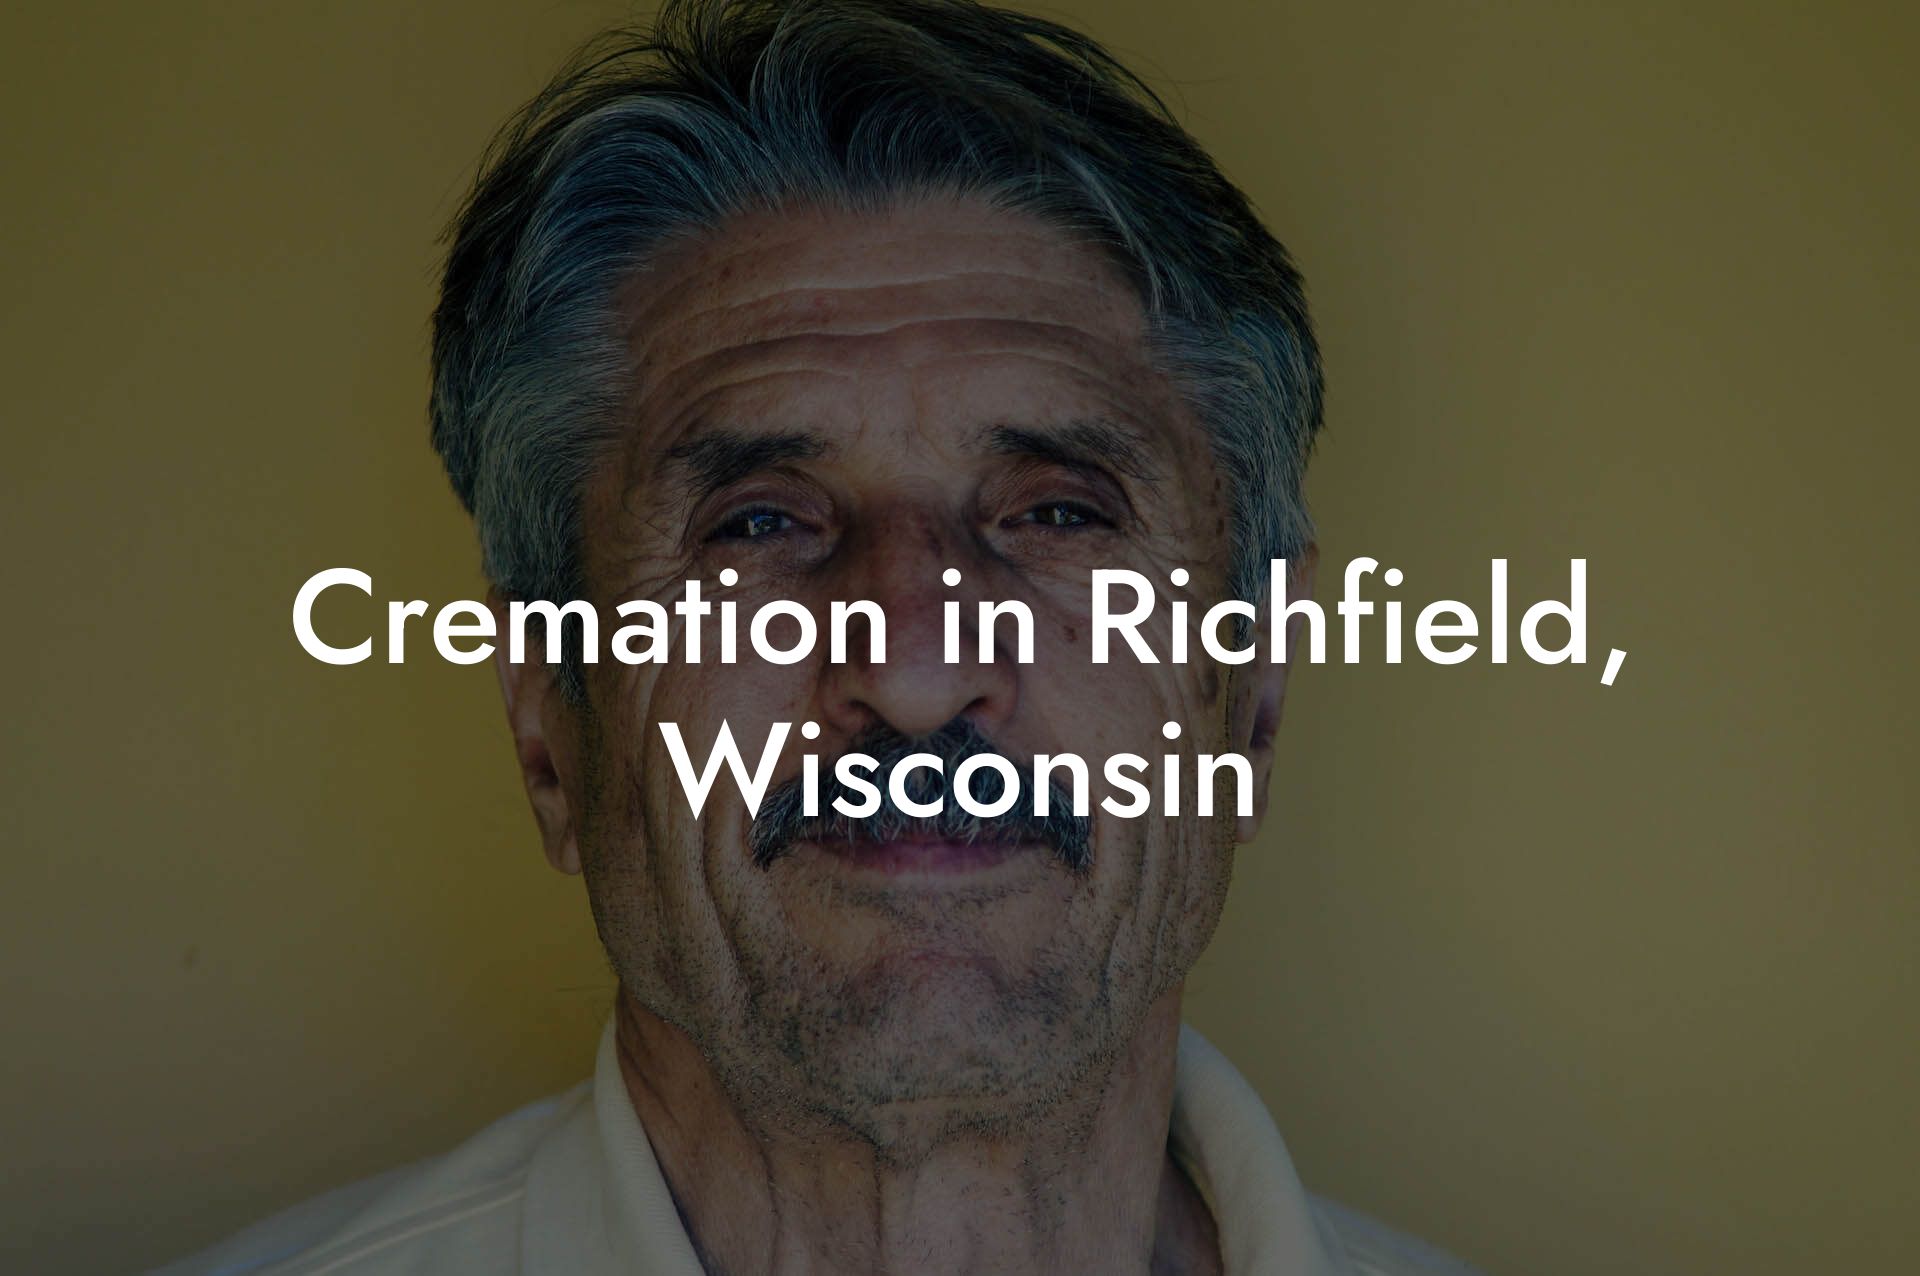 Cremation in Richfield, Wisconsin